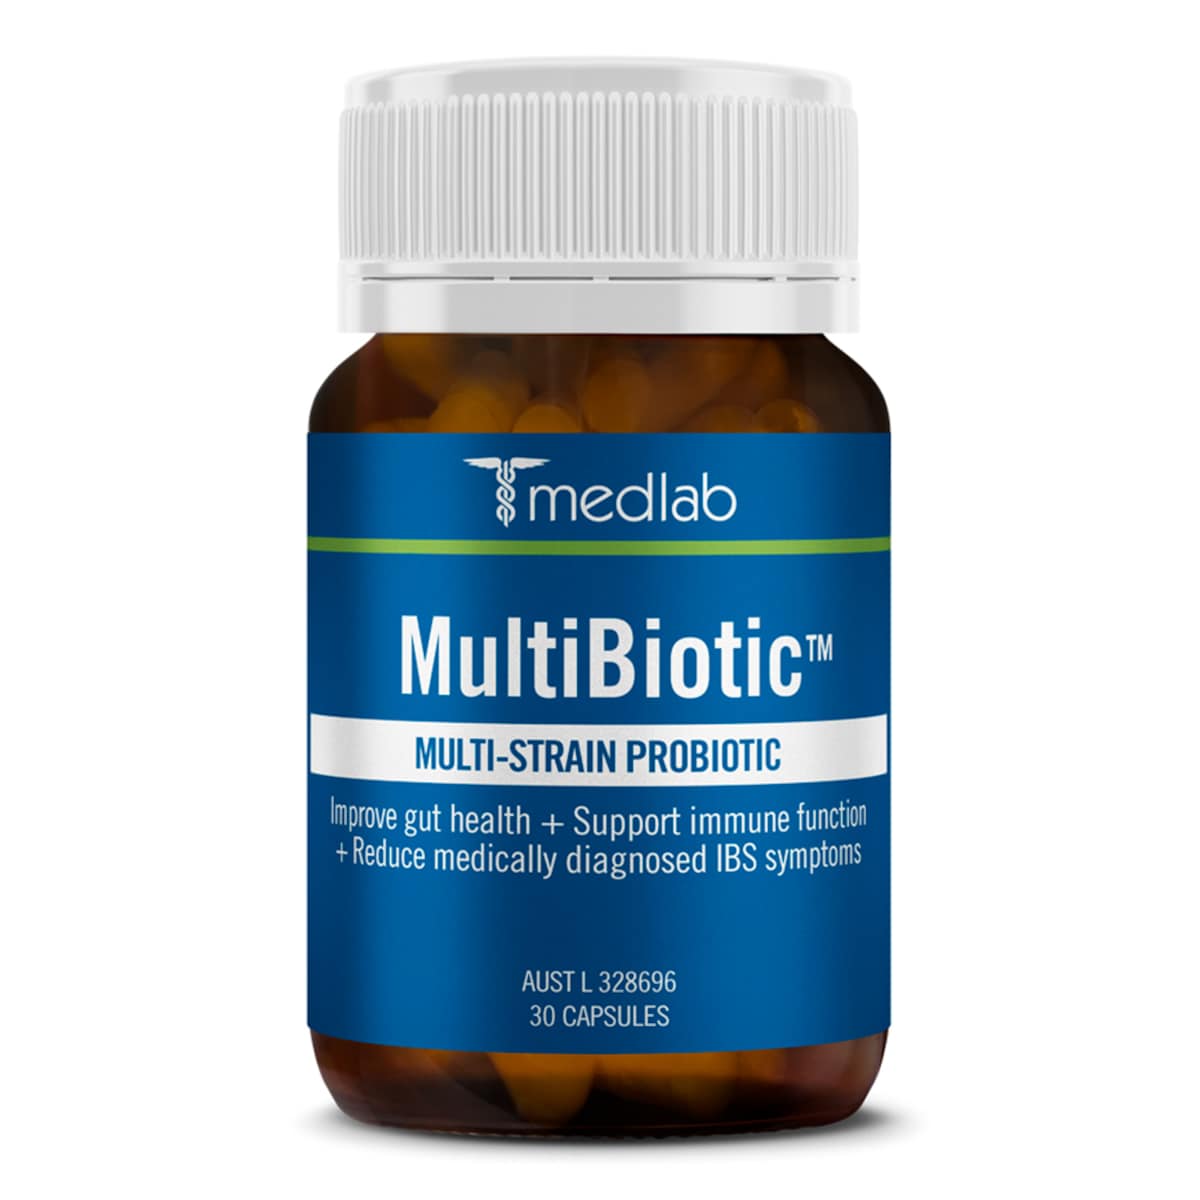 Medlab MultiBiotic Multi-Strain Probiotic 30 Capsules